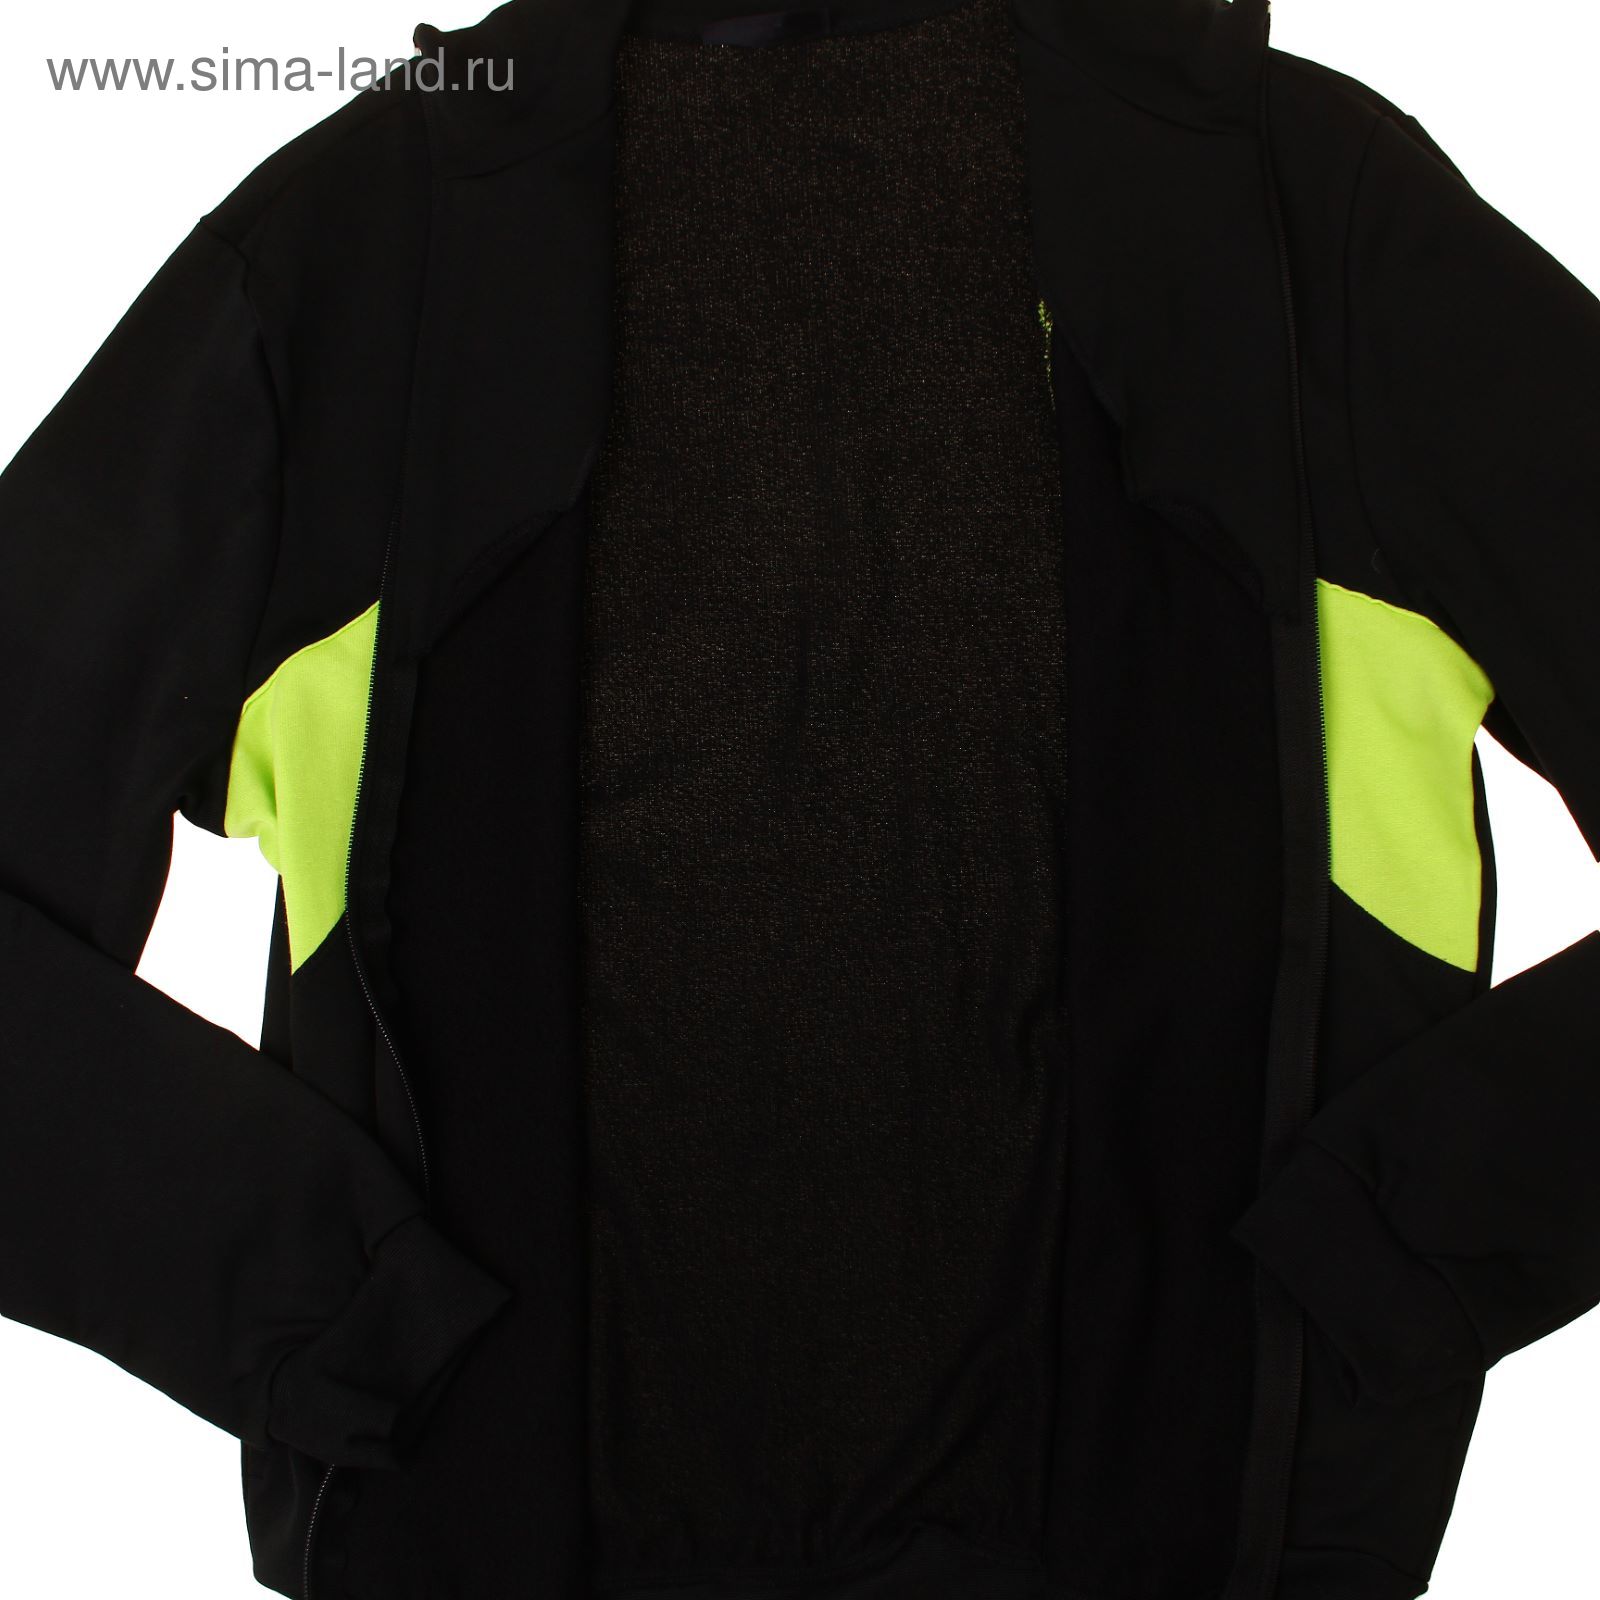 Костюм мужской (куртка+брюки) Р629014 черный, рост 170 см, р-р 52 (104)